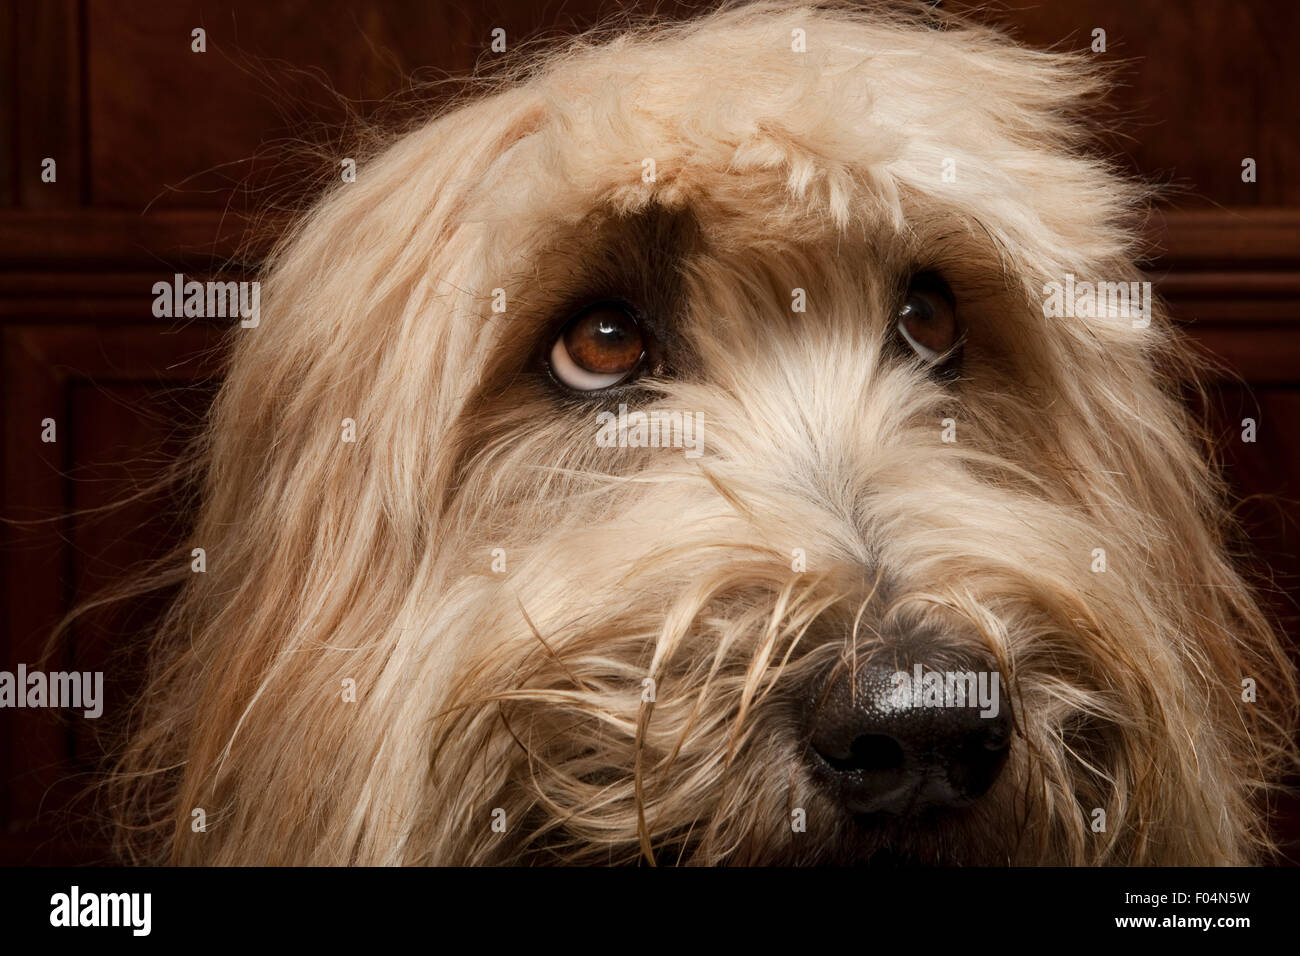 Close up ritratto in studio di espressiva Labradoodle dog face con taglio di capelli carino Foto Stock